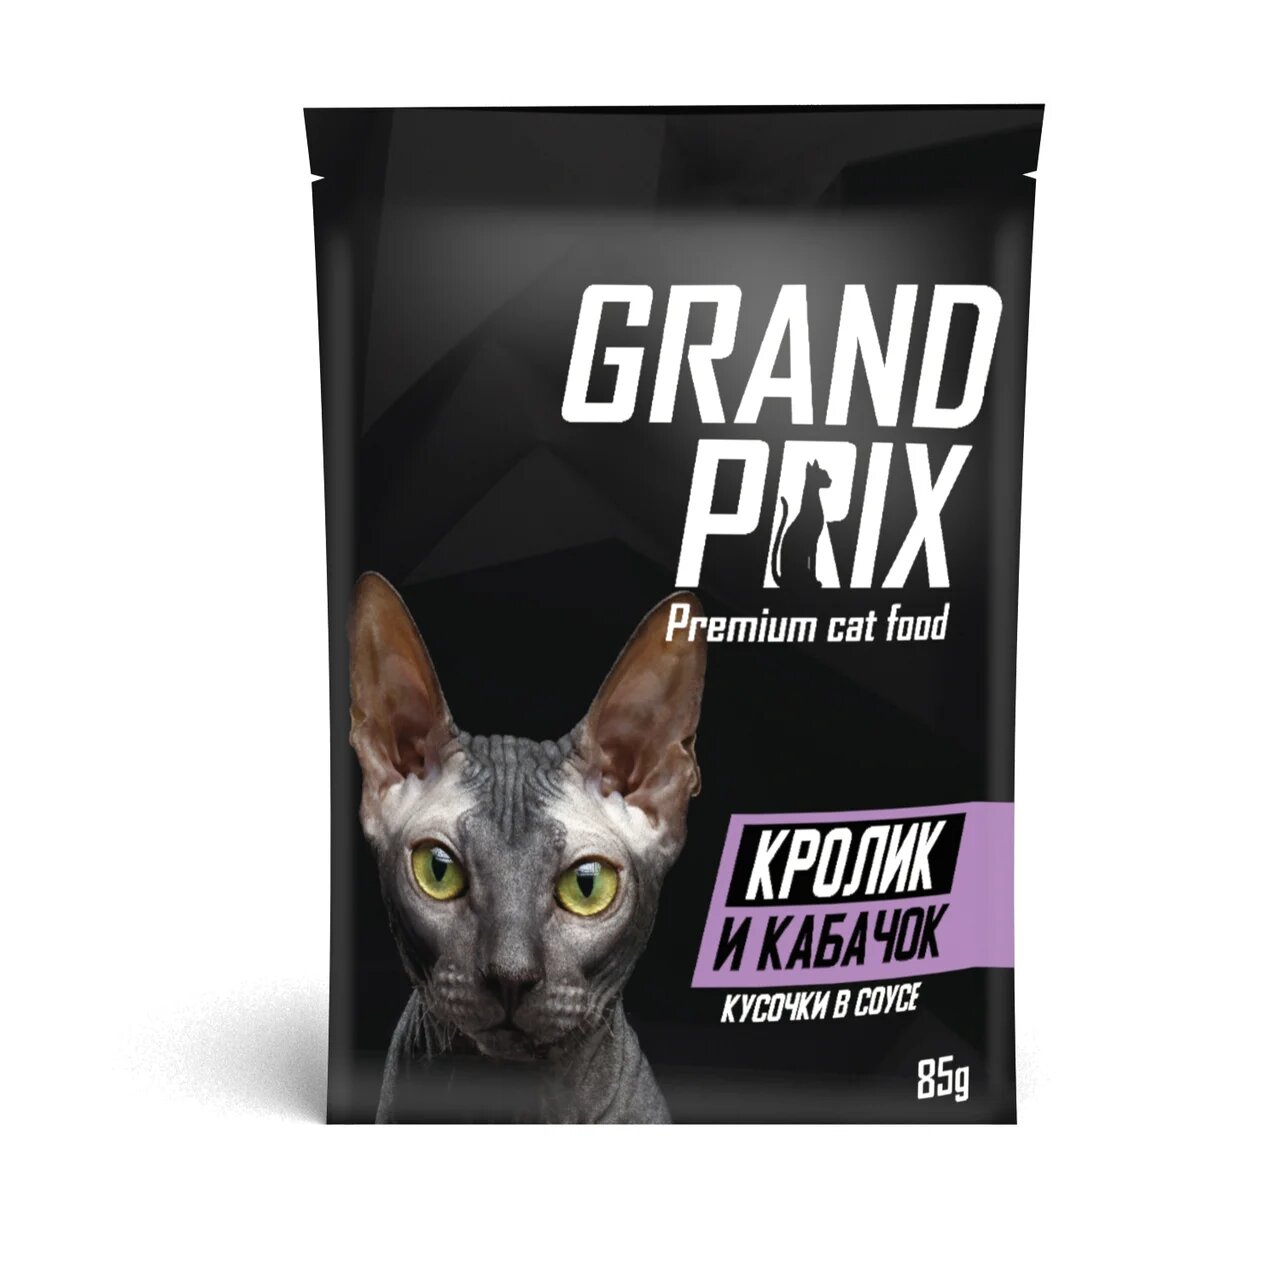 Влажный корм для кошек Grand prix, кролик, 24шт по 85г